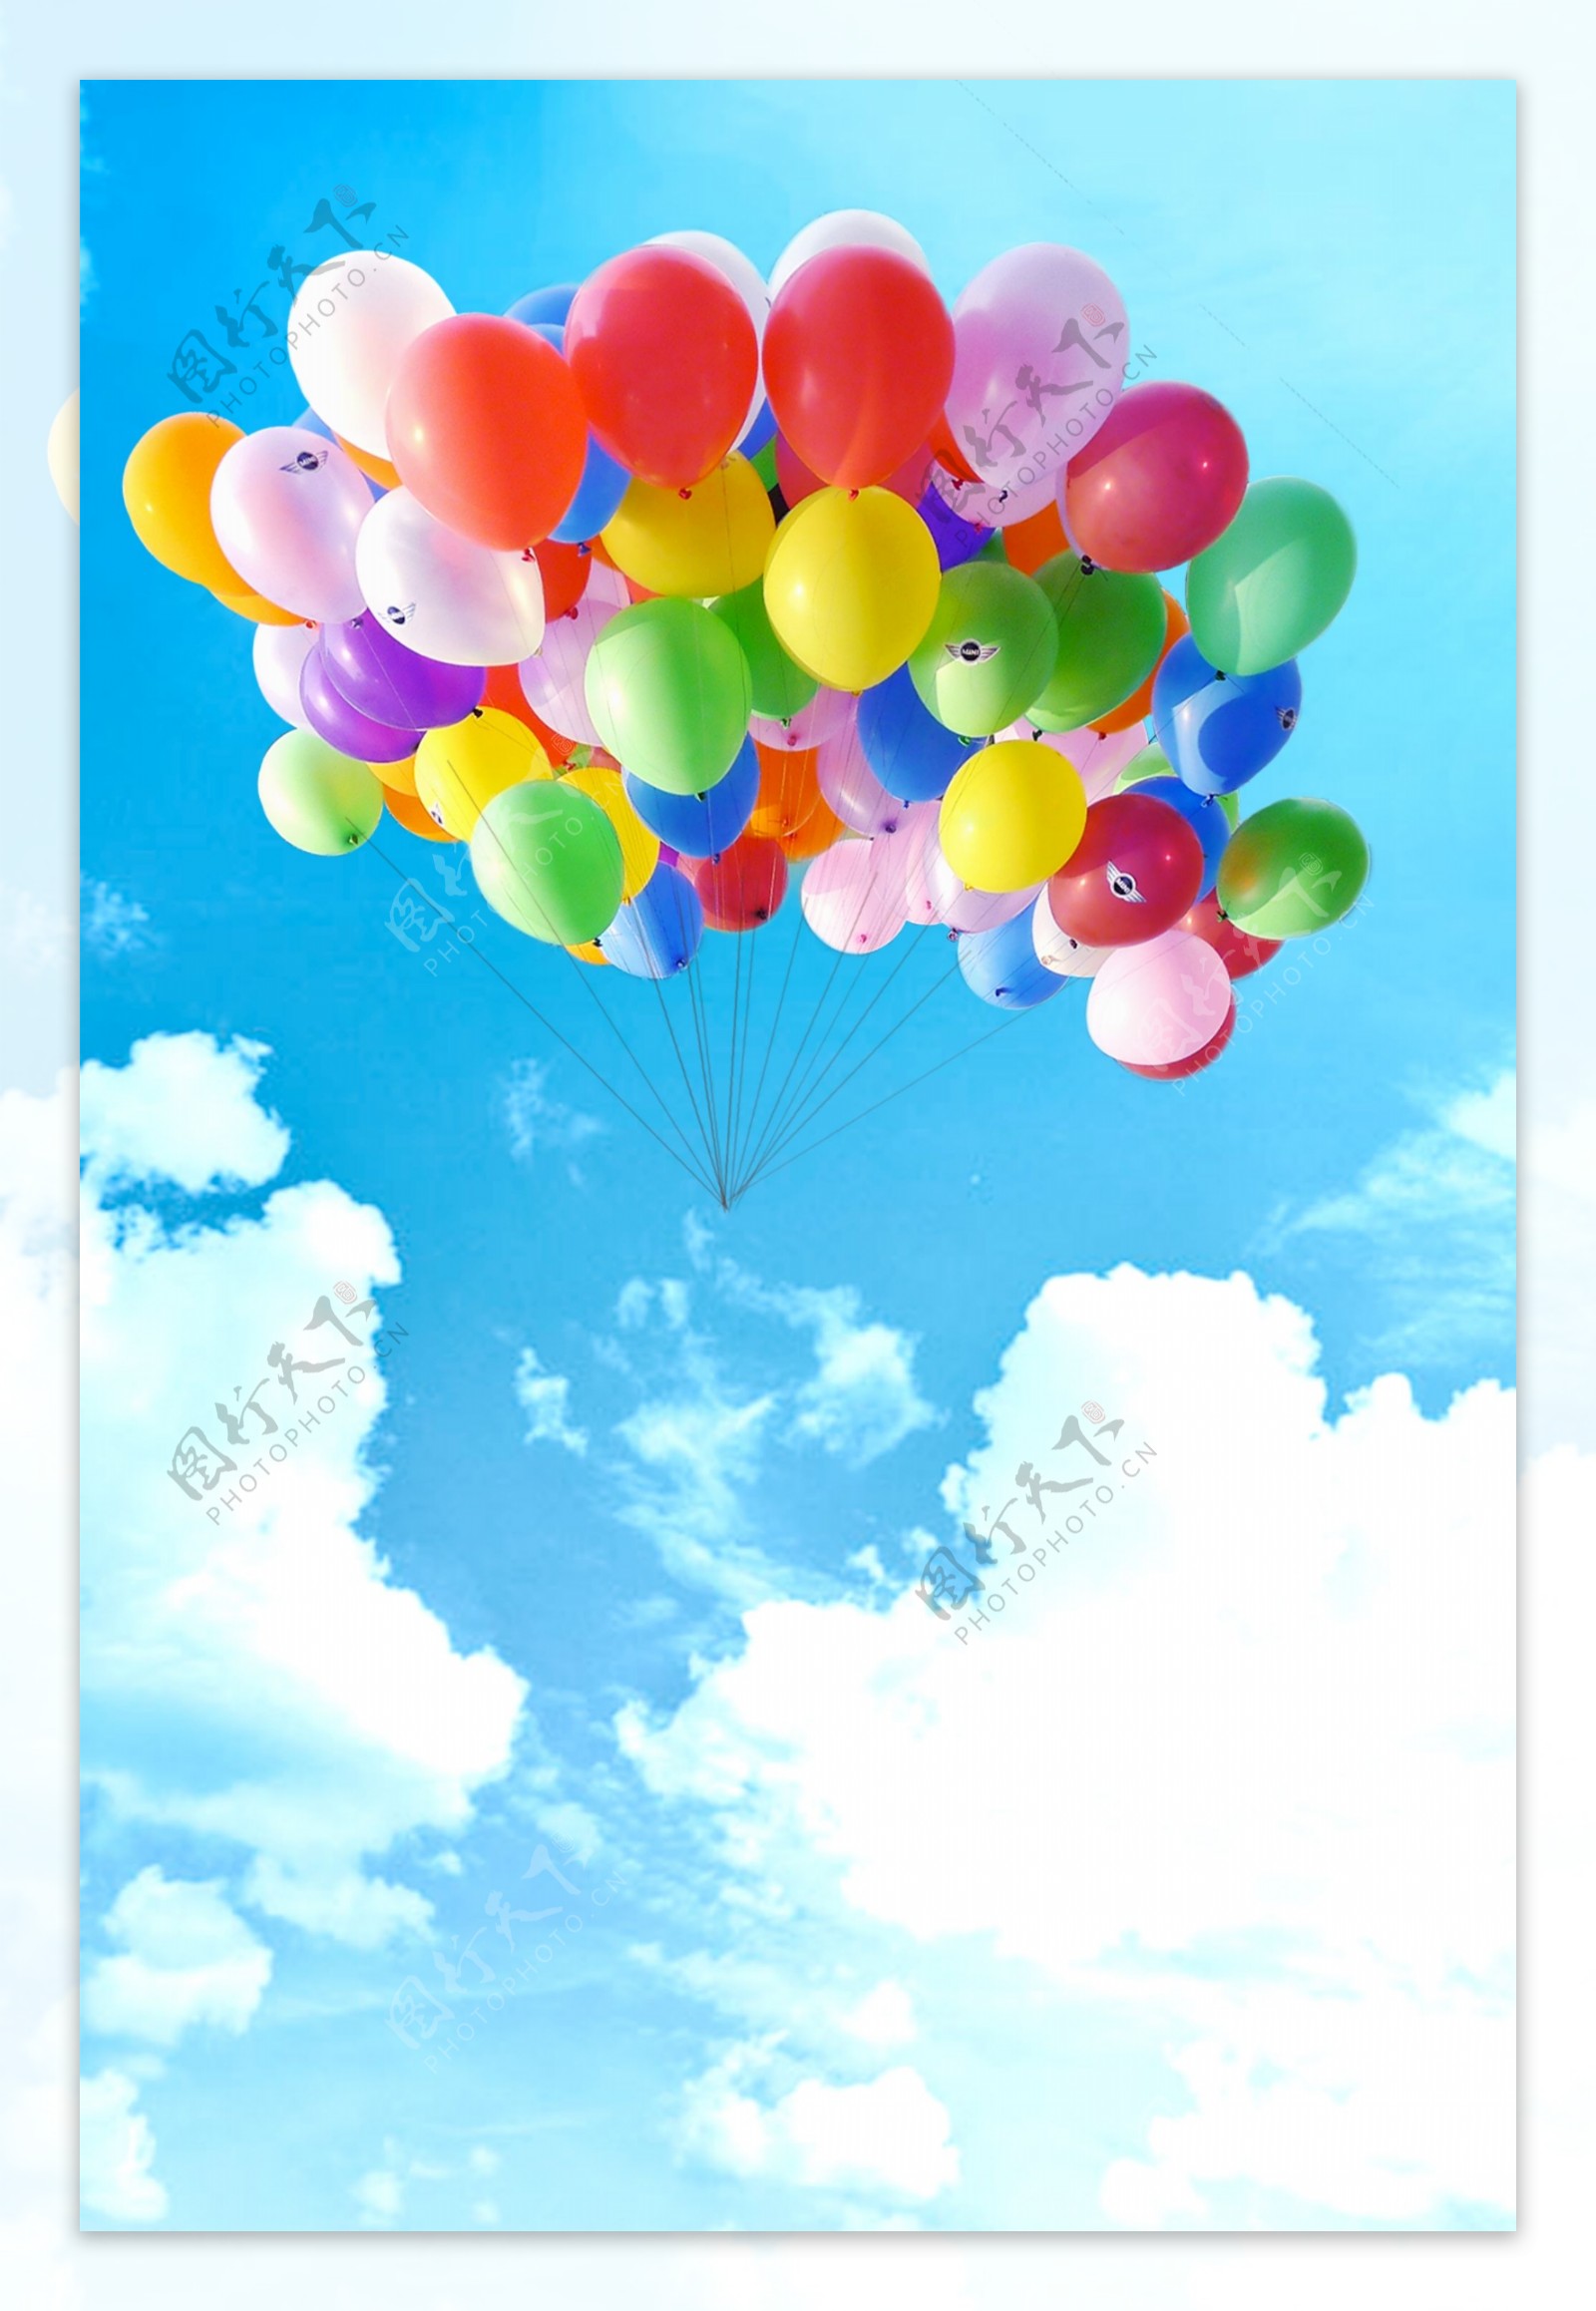 浪漫彩色气球节日素材